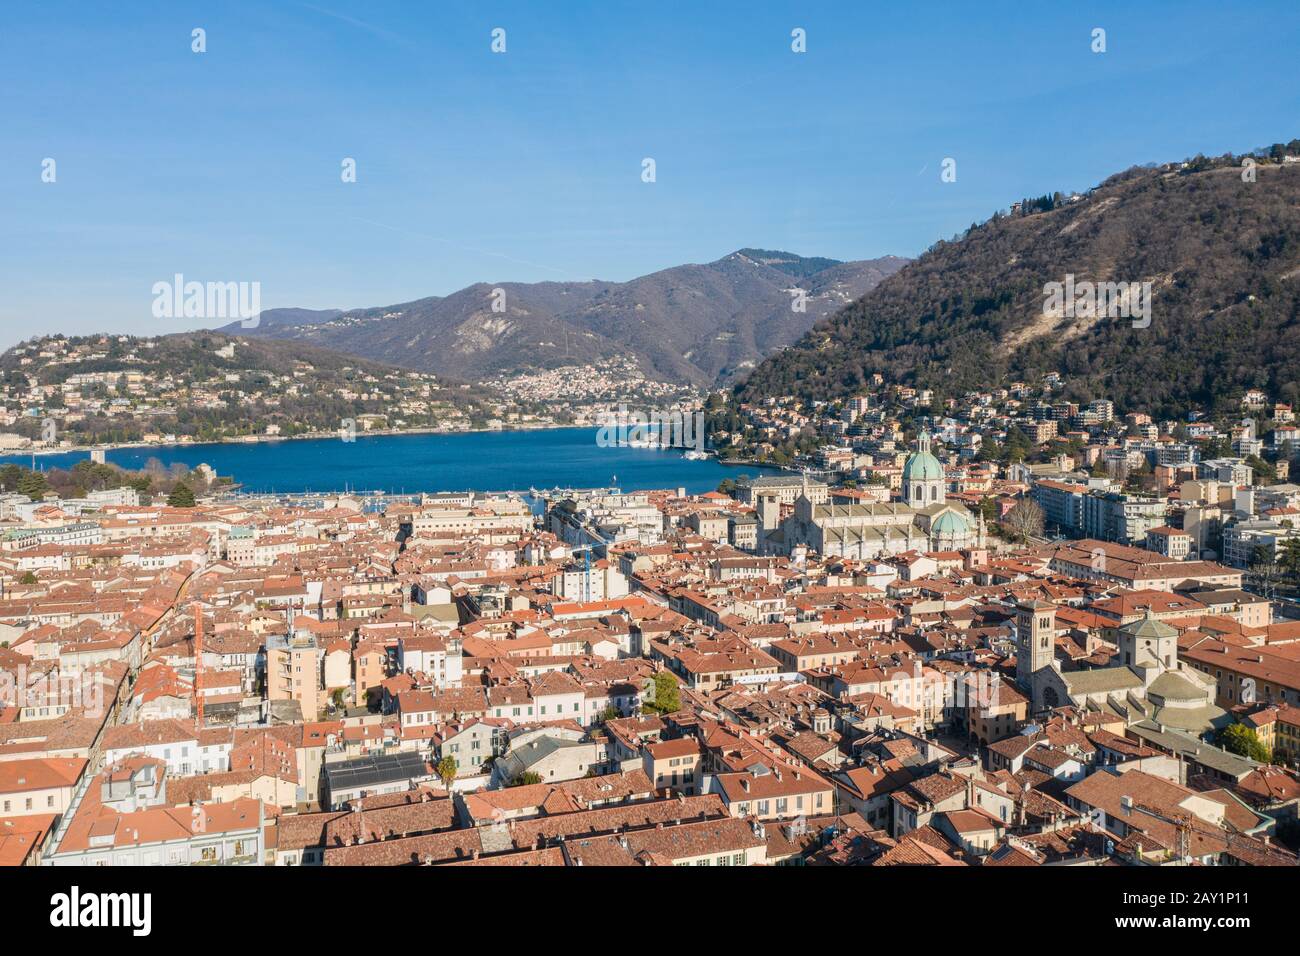 Vista panorámica de la ciudad de como, Italia Foto de stock